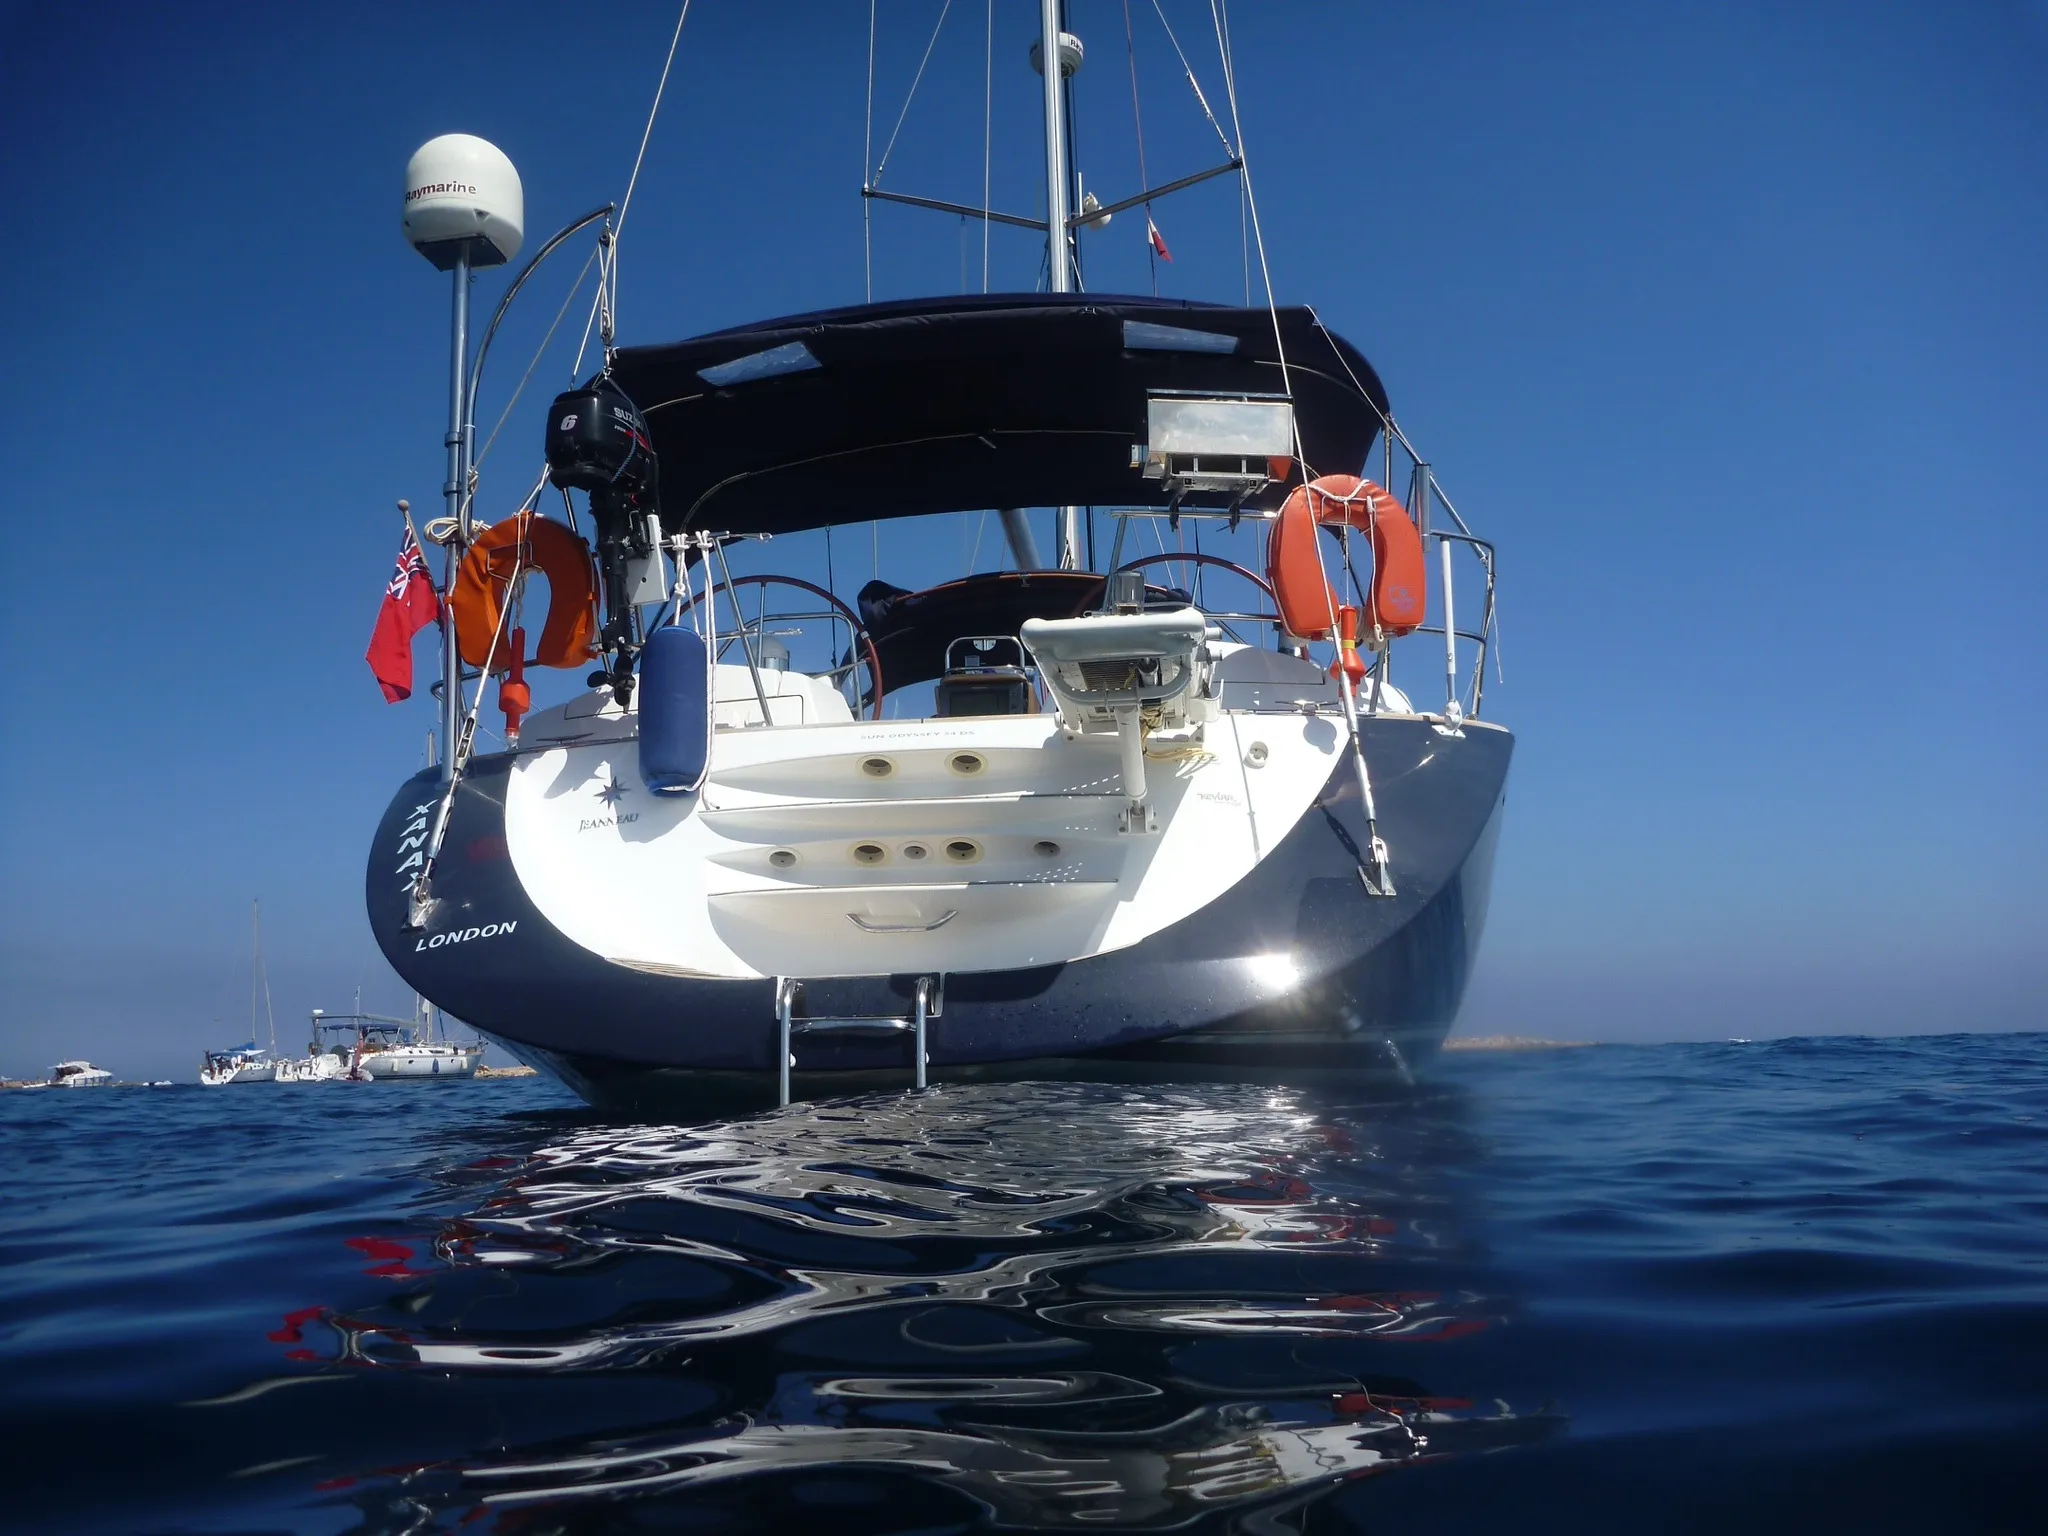 malta-sailing-charter-boat-picture